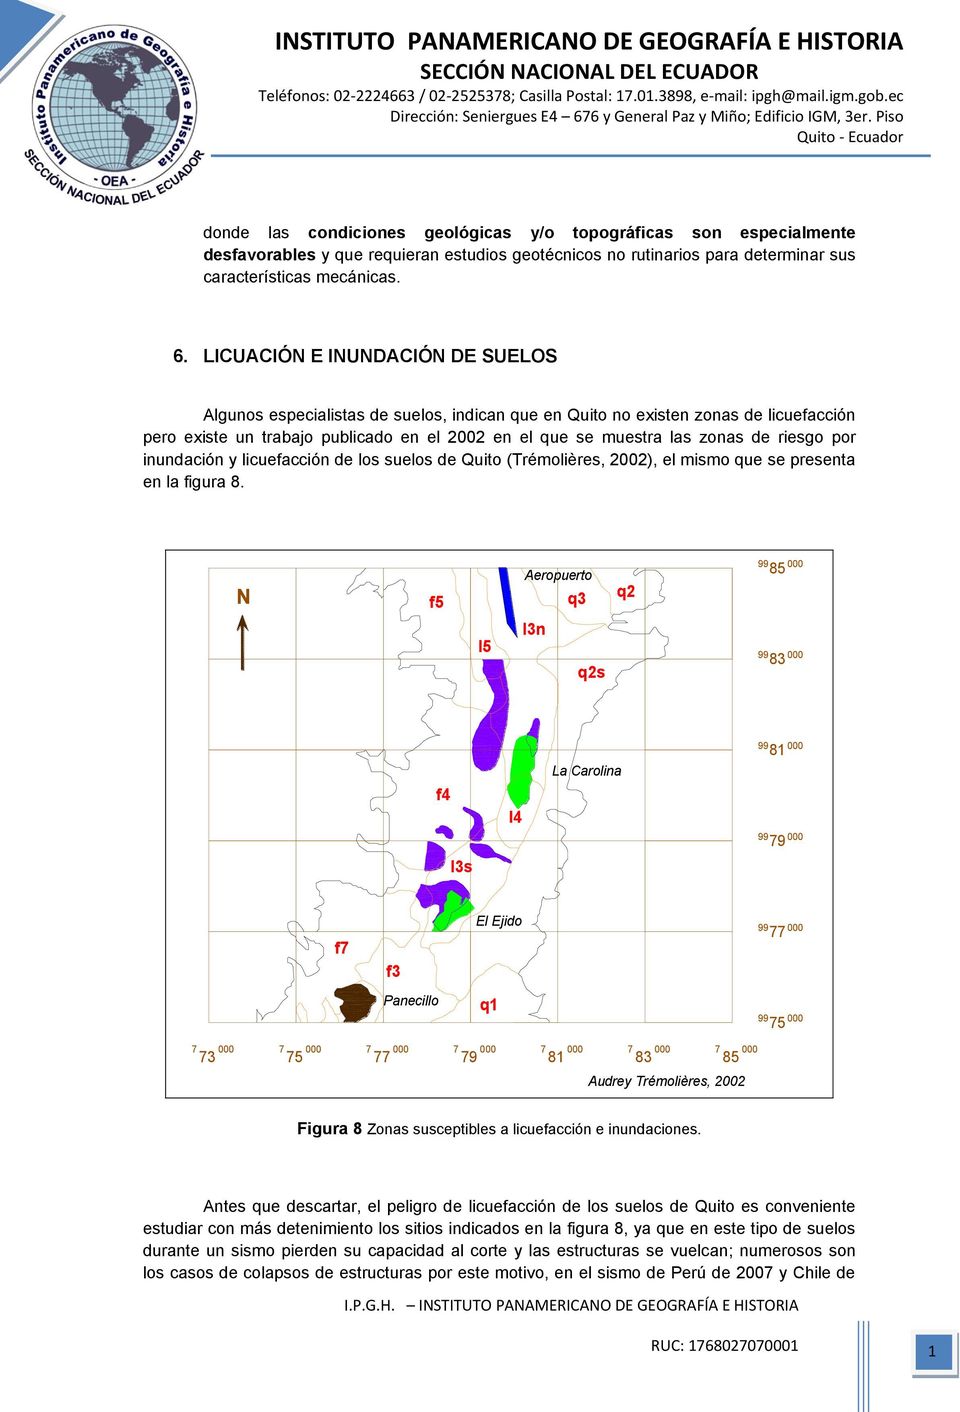 riesgo por inundación y licuefacción de los suelos de Quito (Trémolières, 2002), el mismo que se presenta en la figura 8.